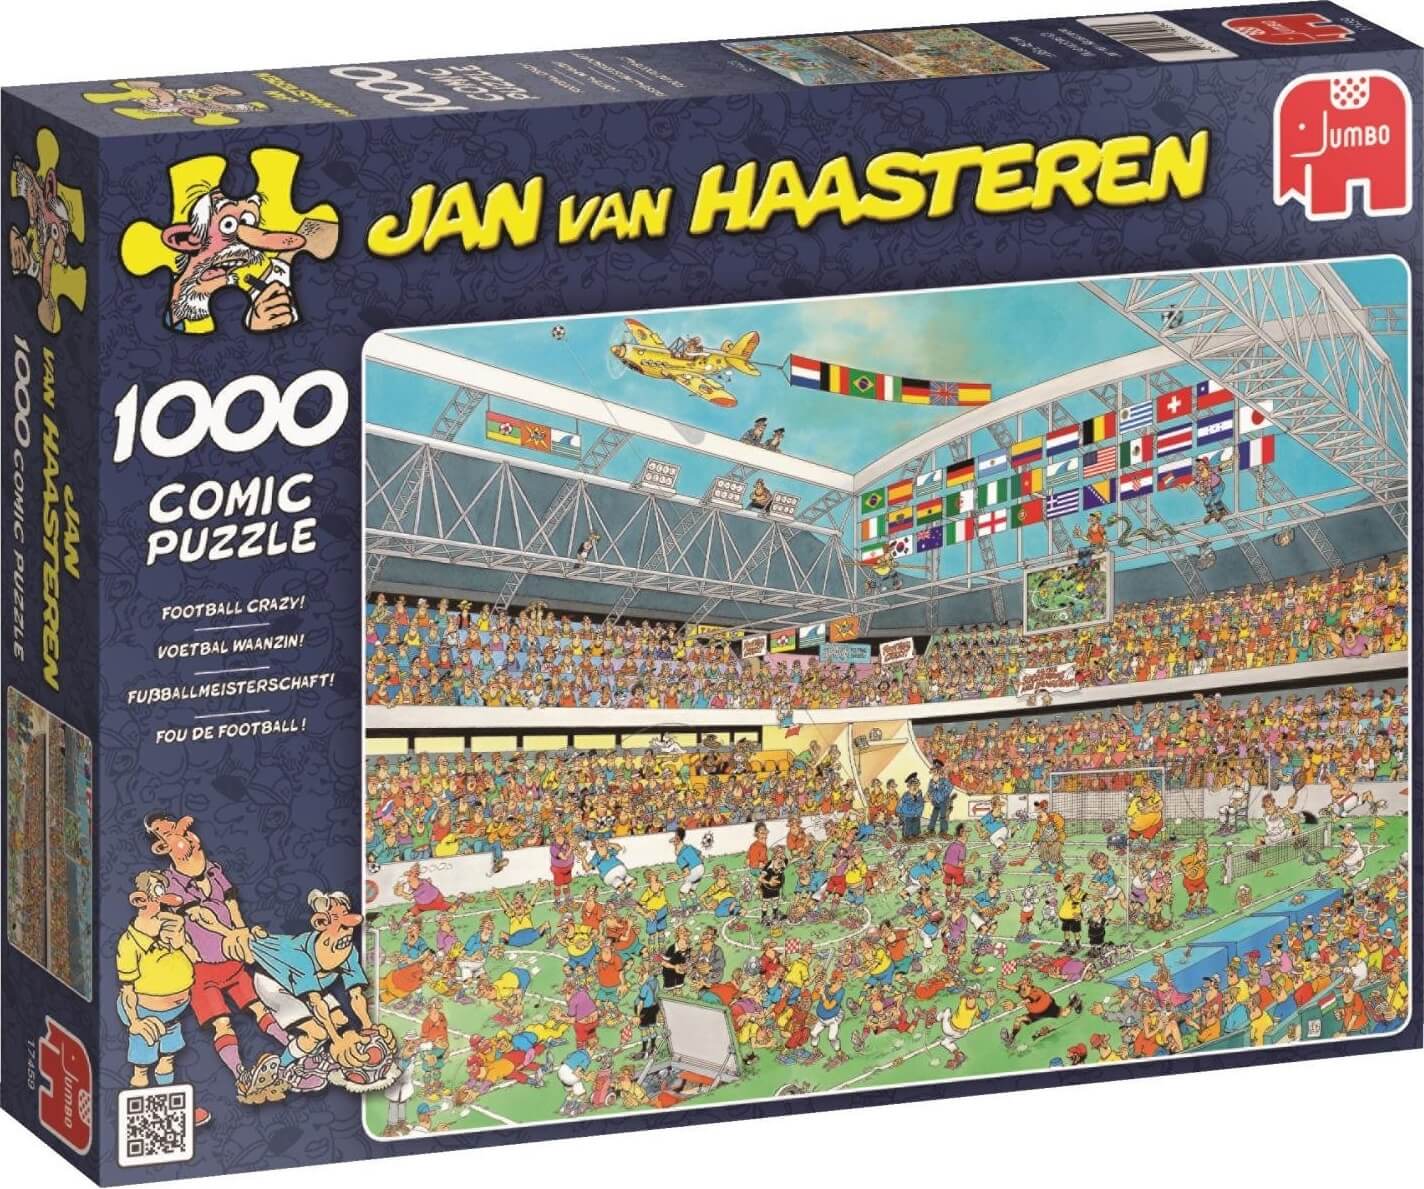 1000 Footbal Crazy, Jan Van Haasteren ( Jumbo 17459 ) imagen b